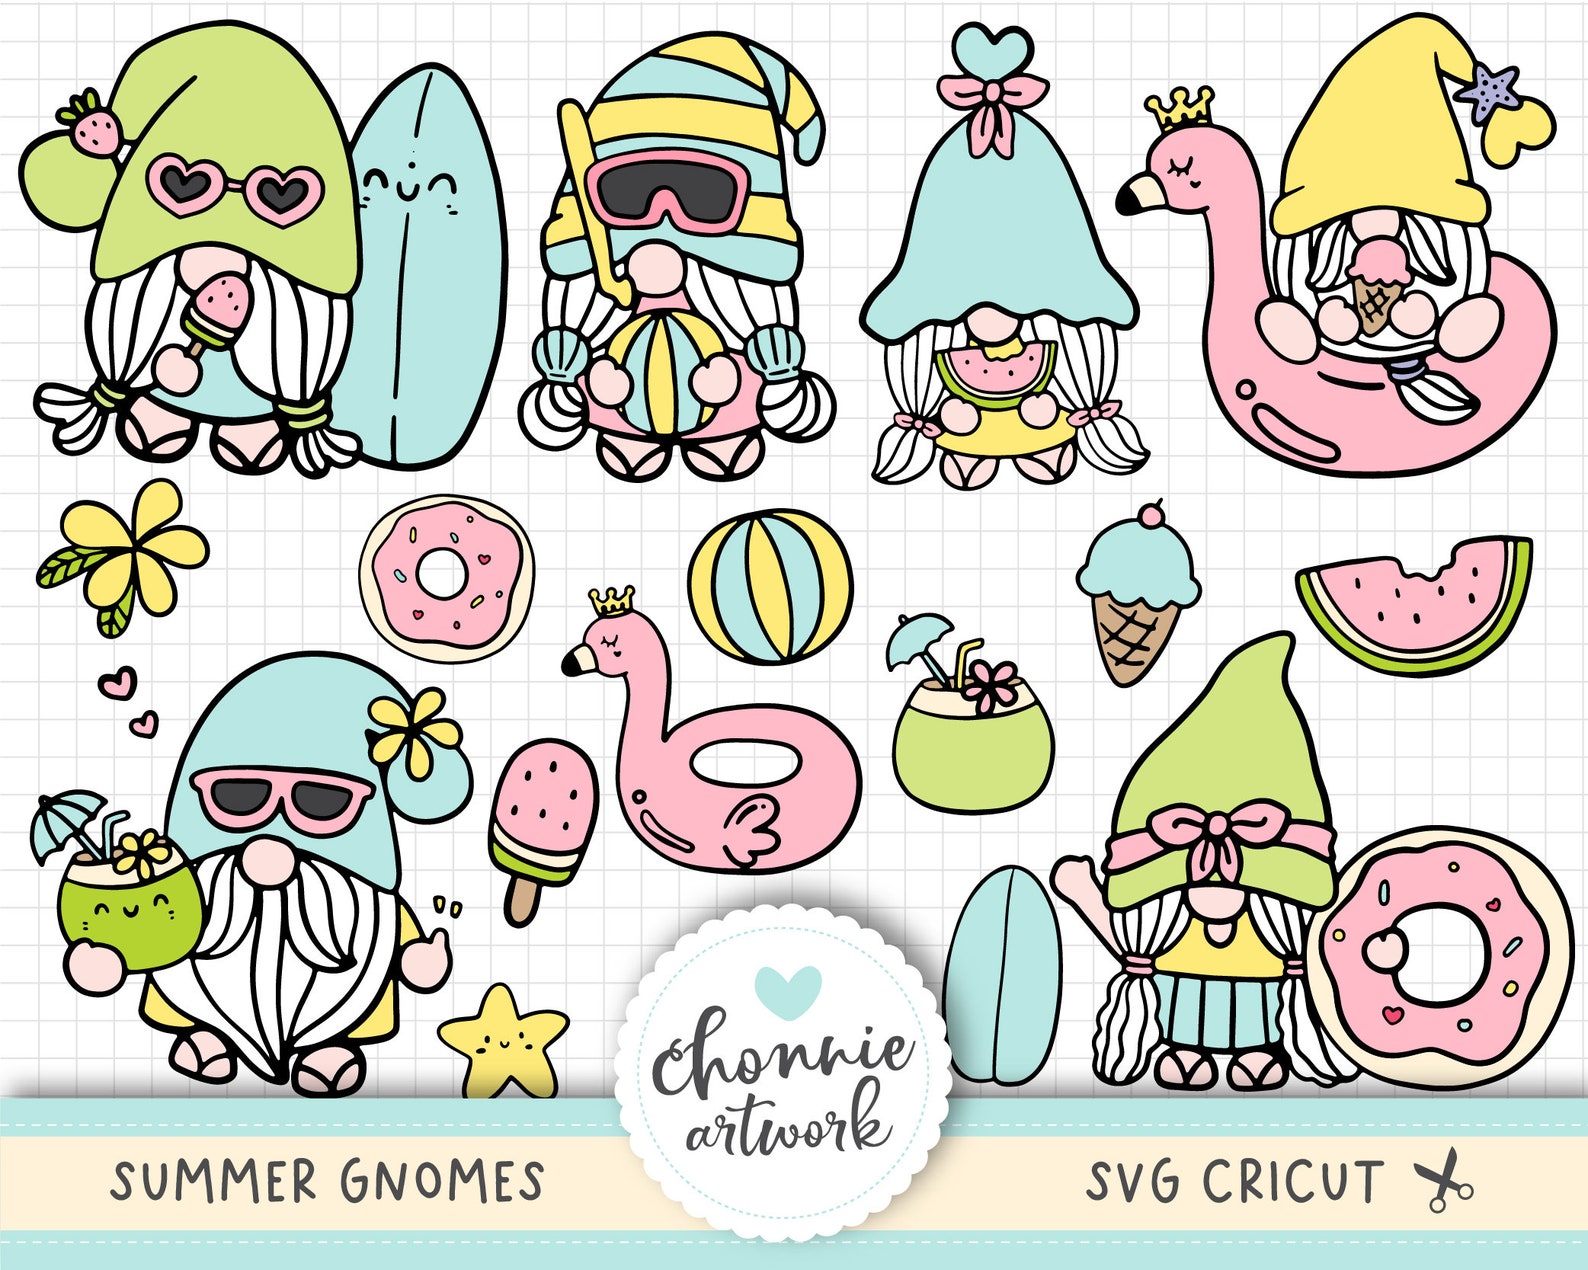 Download Summer Gnomes SVG Summer Gnomes SVG Bundle Gnomes SVG | Etsy